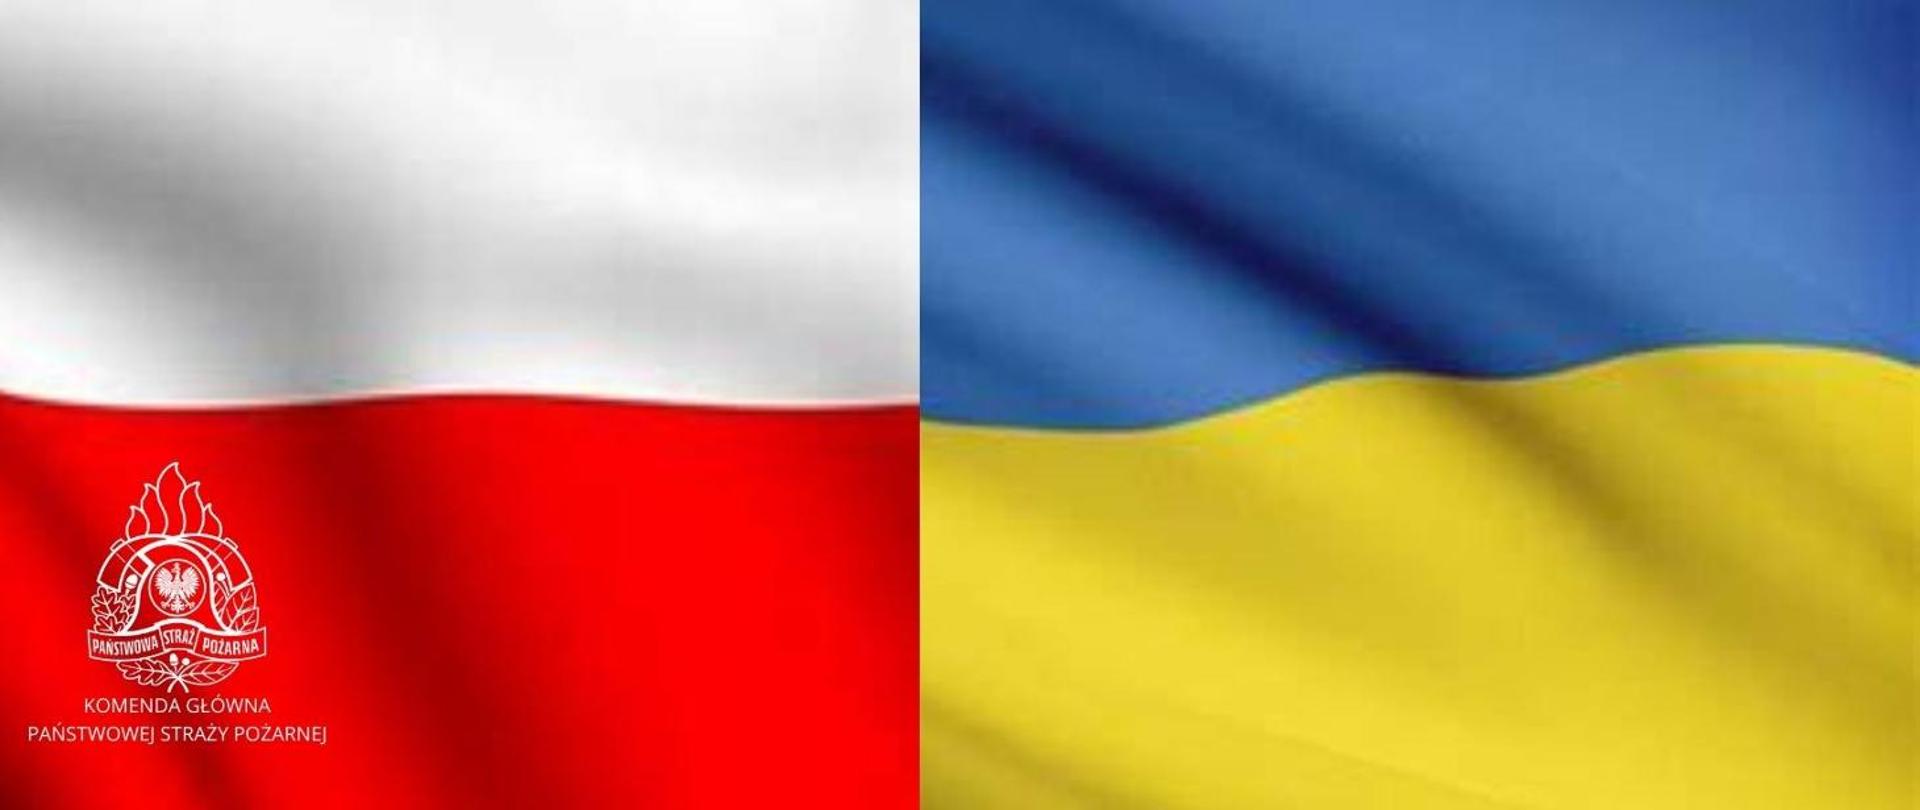 Zdjęcie przedstawia dwie połączone flagi narodowe: polską biało-czerwoną z białym logotypem PSP na czerwonym tle i ukraińska niebiesko-żółtą.